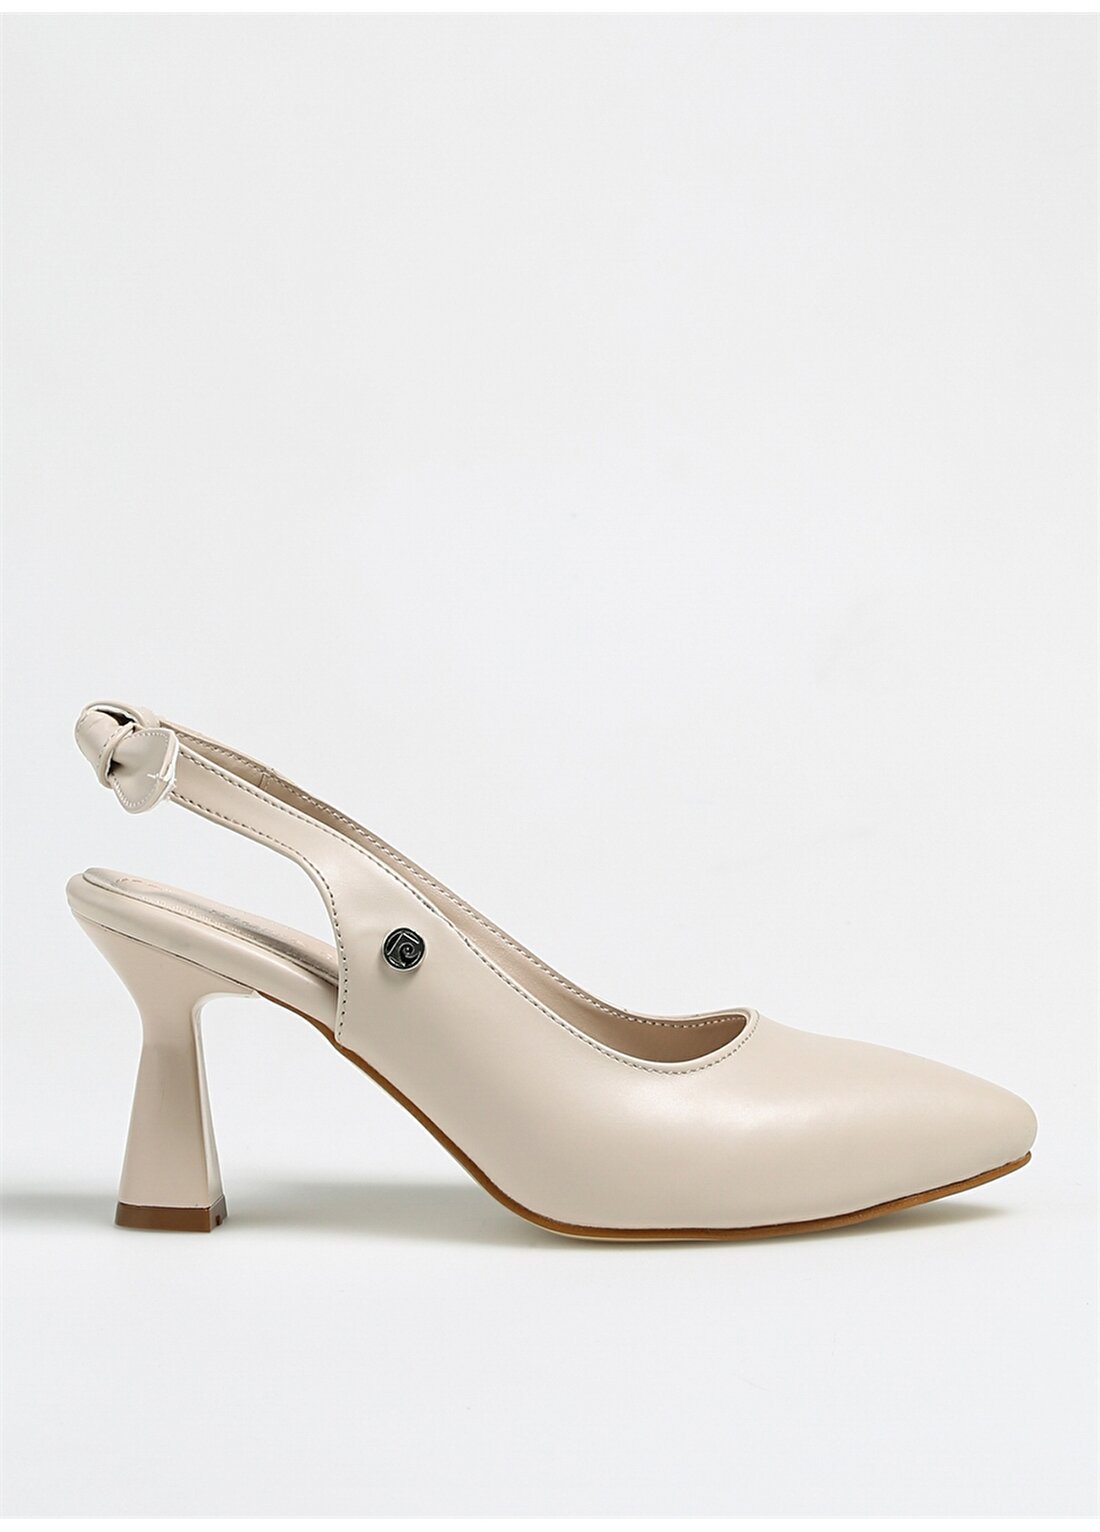 Pierre Cardin Krem Kadın Topuklu Ayakkabı PC-52284